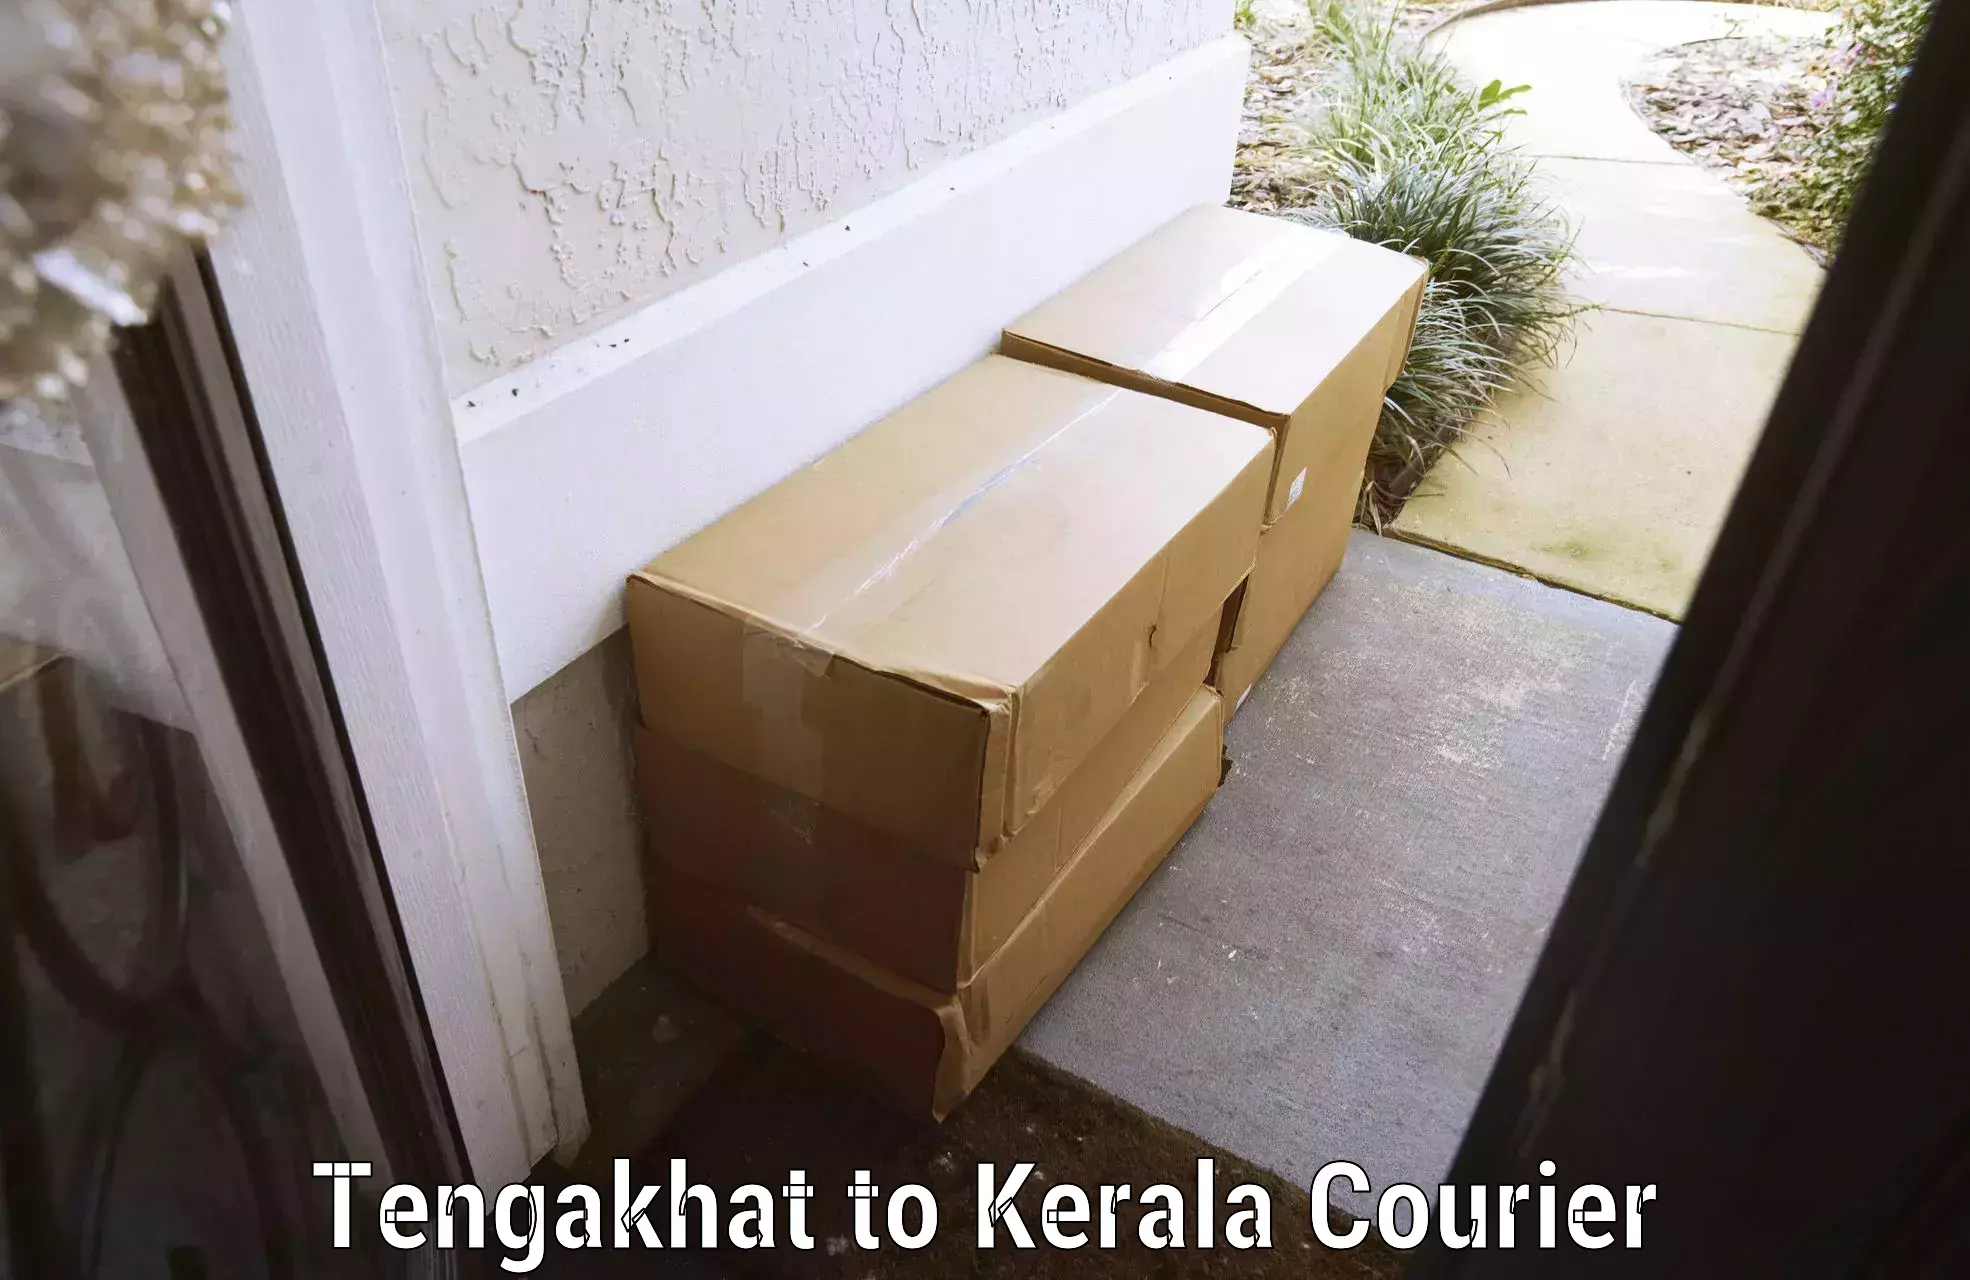 Luggage forwarding service Tengakhat to IIIT Kottayam